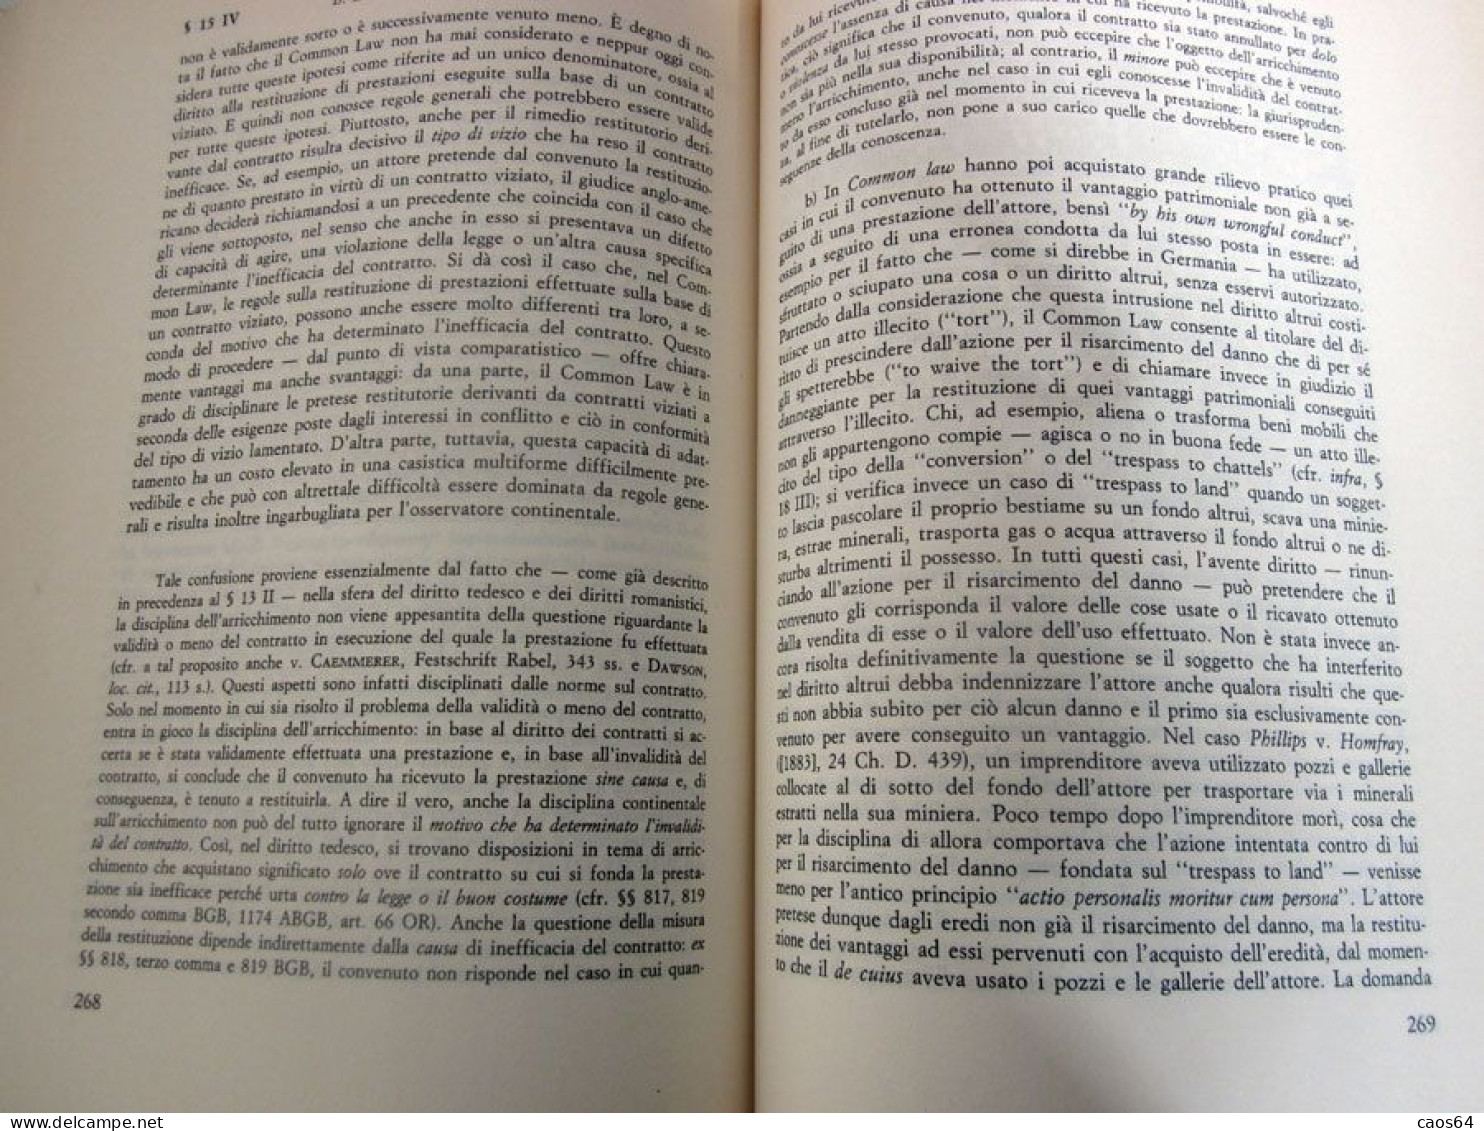 Introduzione al Diritto Comparato II Konrad Zweigert/Hein Kötz Giuffrè 1995